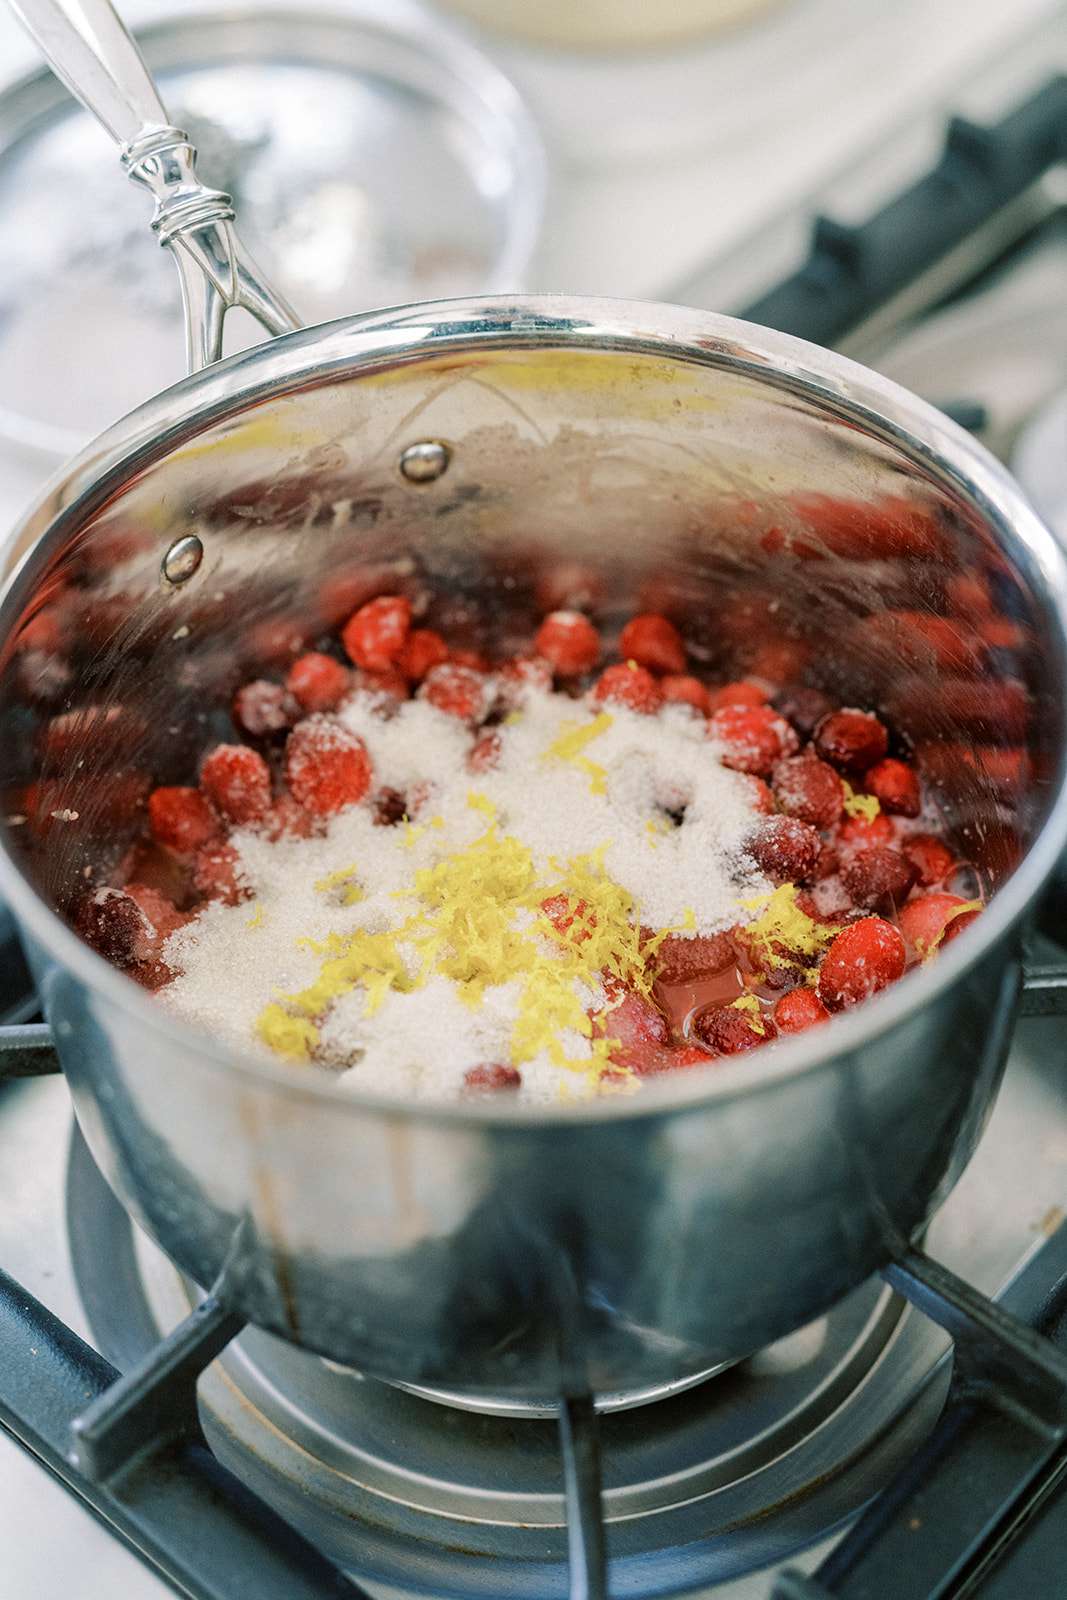 Uma panela com cranberries, açúcar e raspas de limão fervendo no fogão